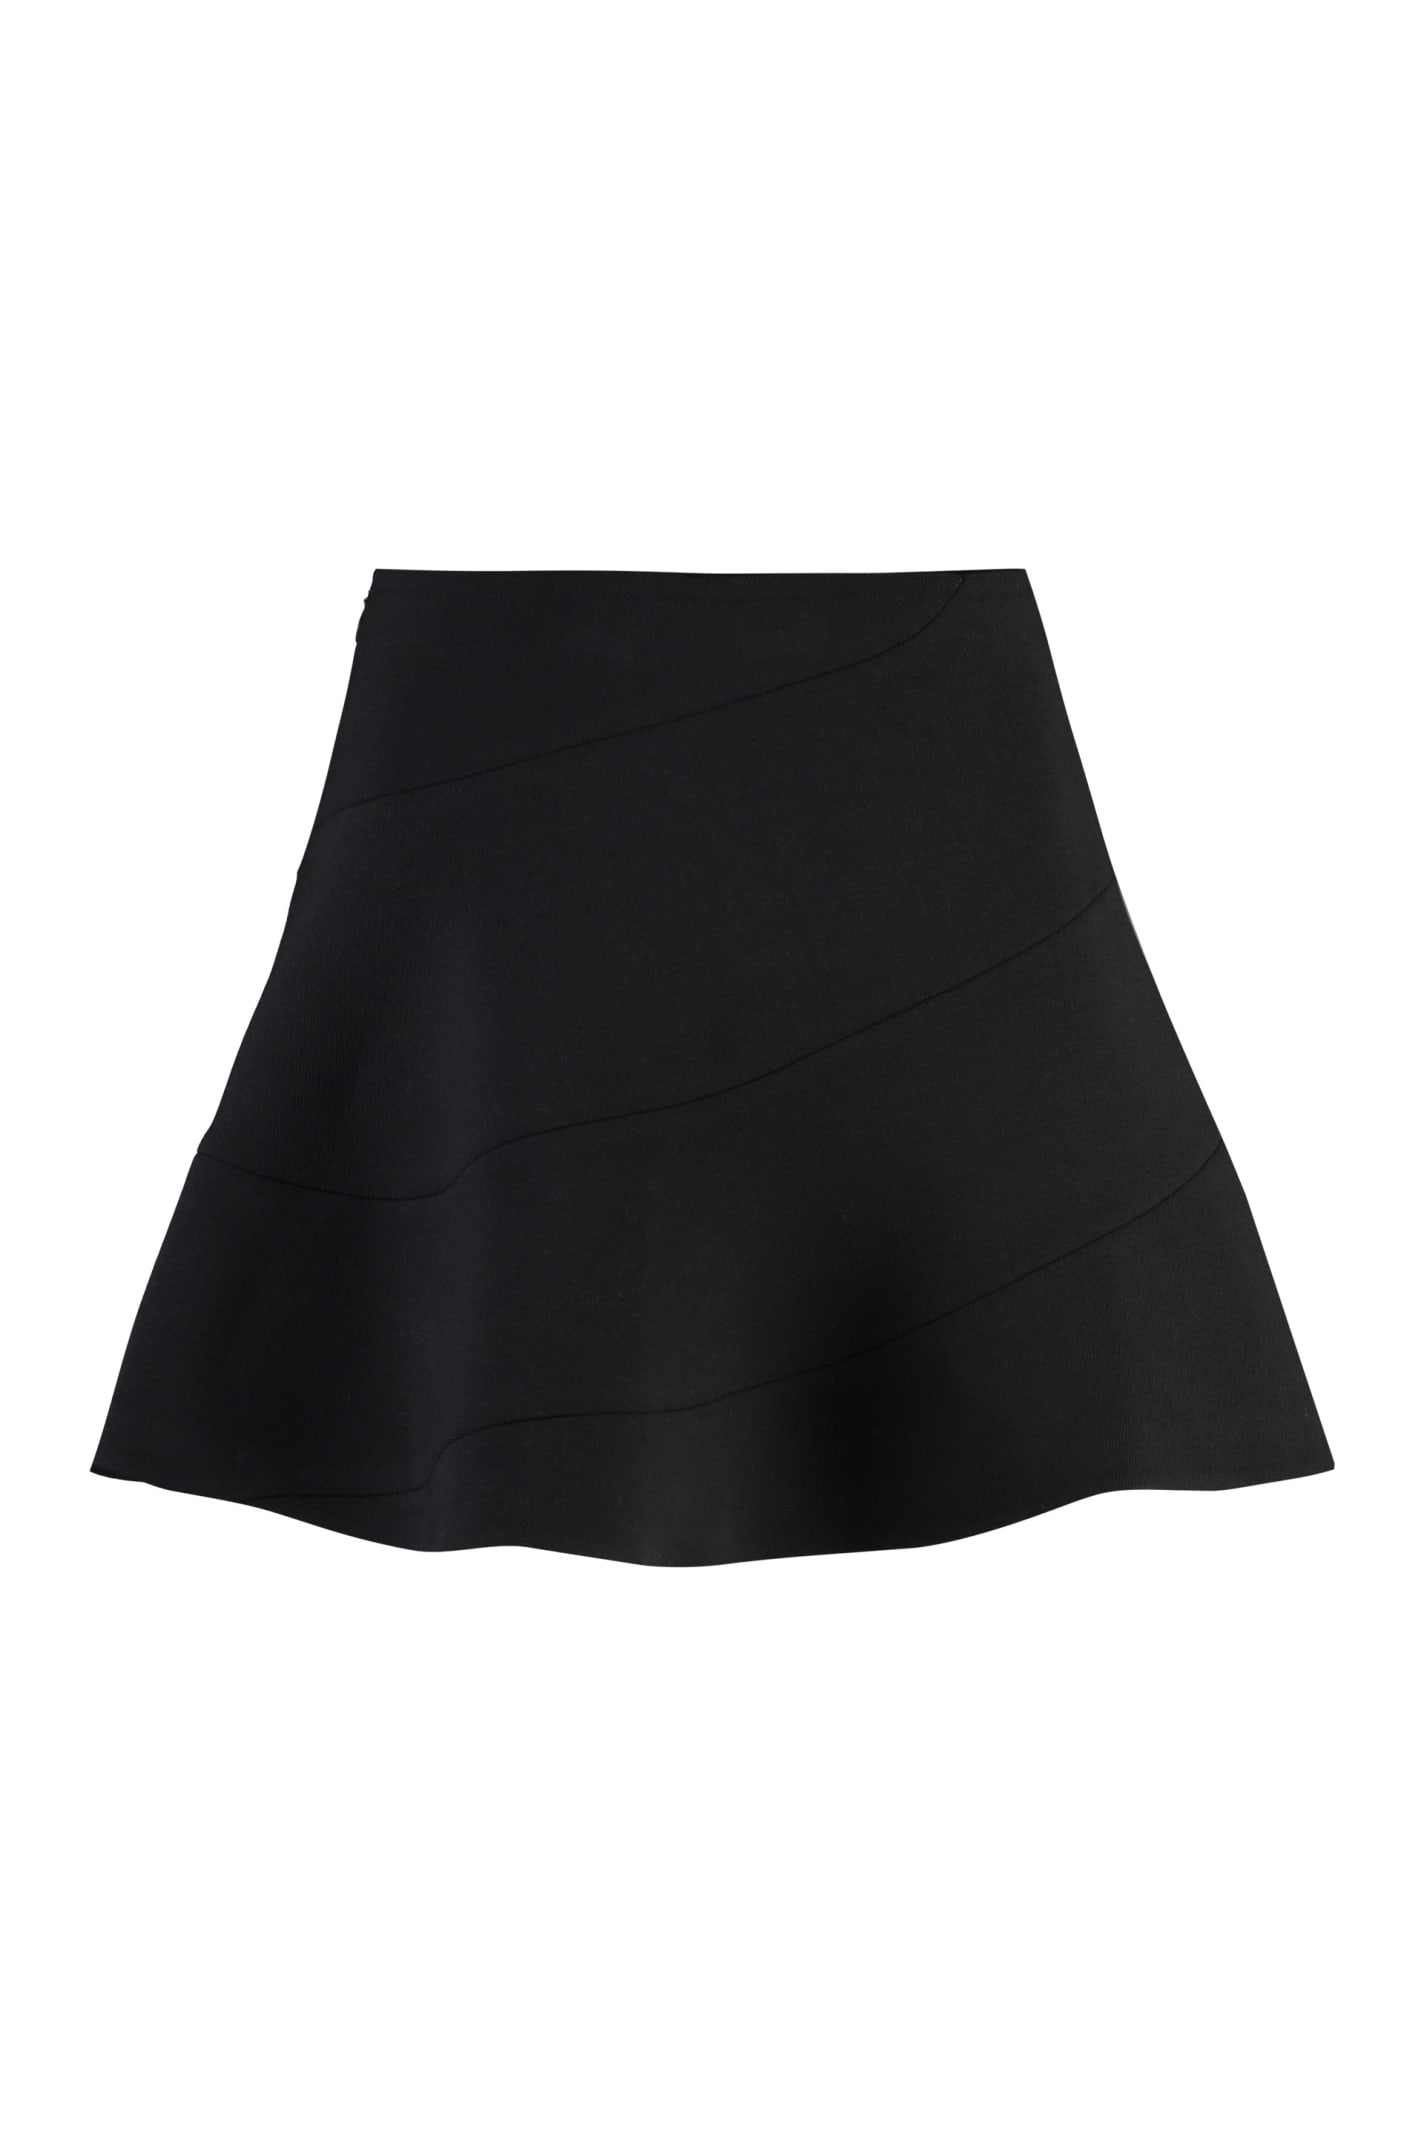 Full Mini Skirt